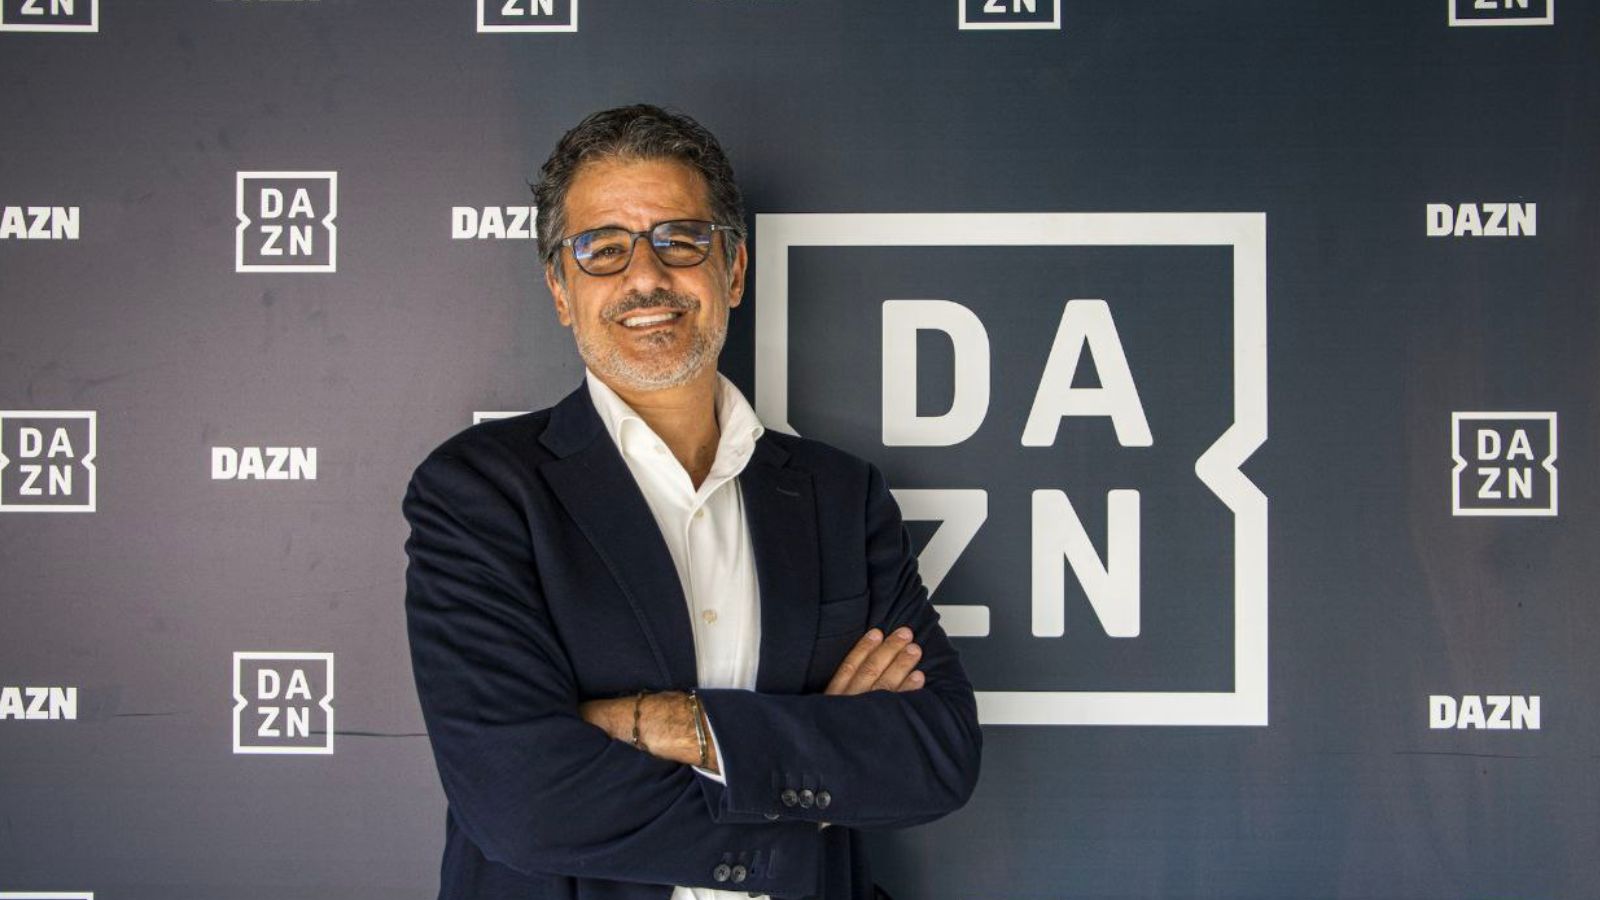 Dazn e Sky si aggiudicano i diritti TV della Serie A di calcio fino al 2029